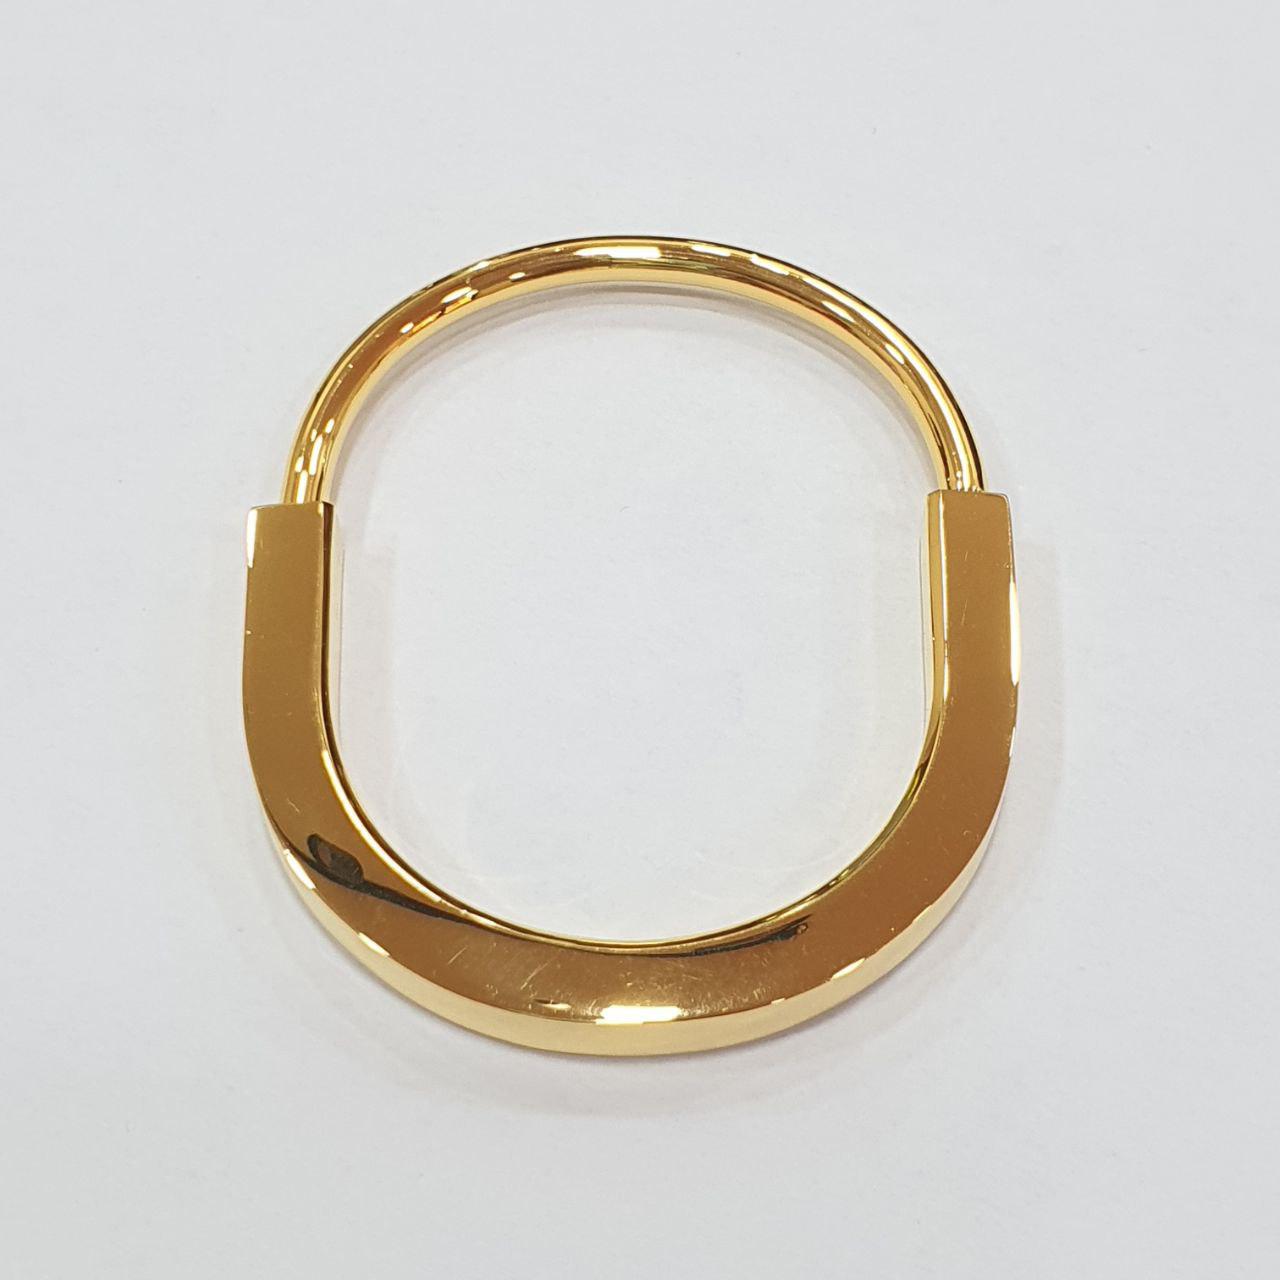 22k / 916 Gold Hollow T design U Lock Bangle-916 gold-Best Gold Shop